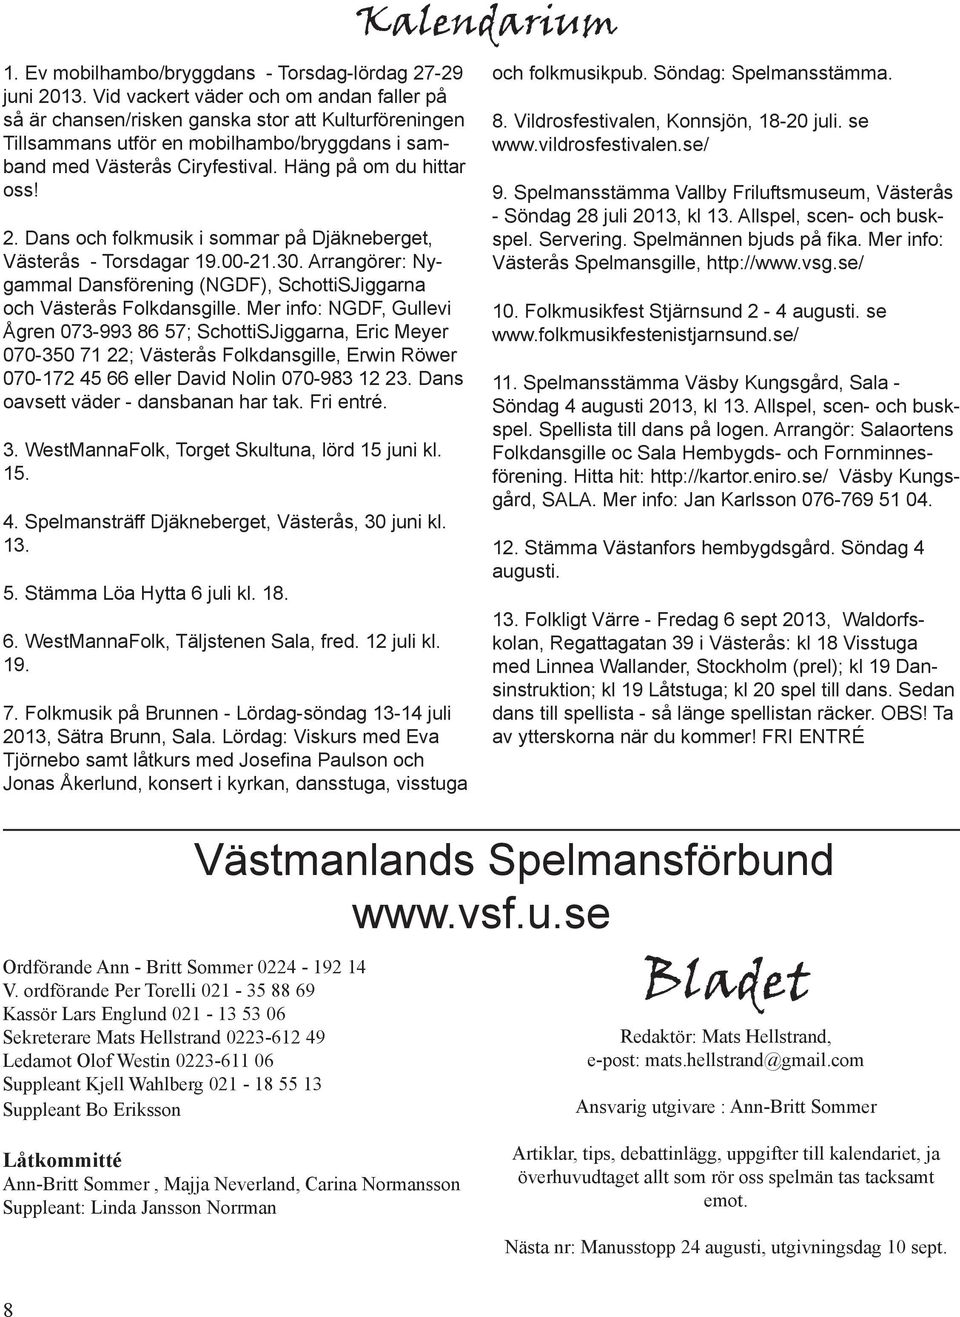 2. Dans och folkmusik i sommar på Djäkneberget, Västerås - Torsdagar 19.00-21.30. Arrangörer: Nygammal Dansförening (NGDF), SchottiSJiggarna och Västerås Folkdansgille.